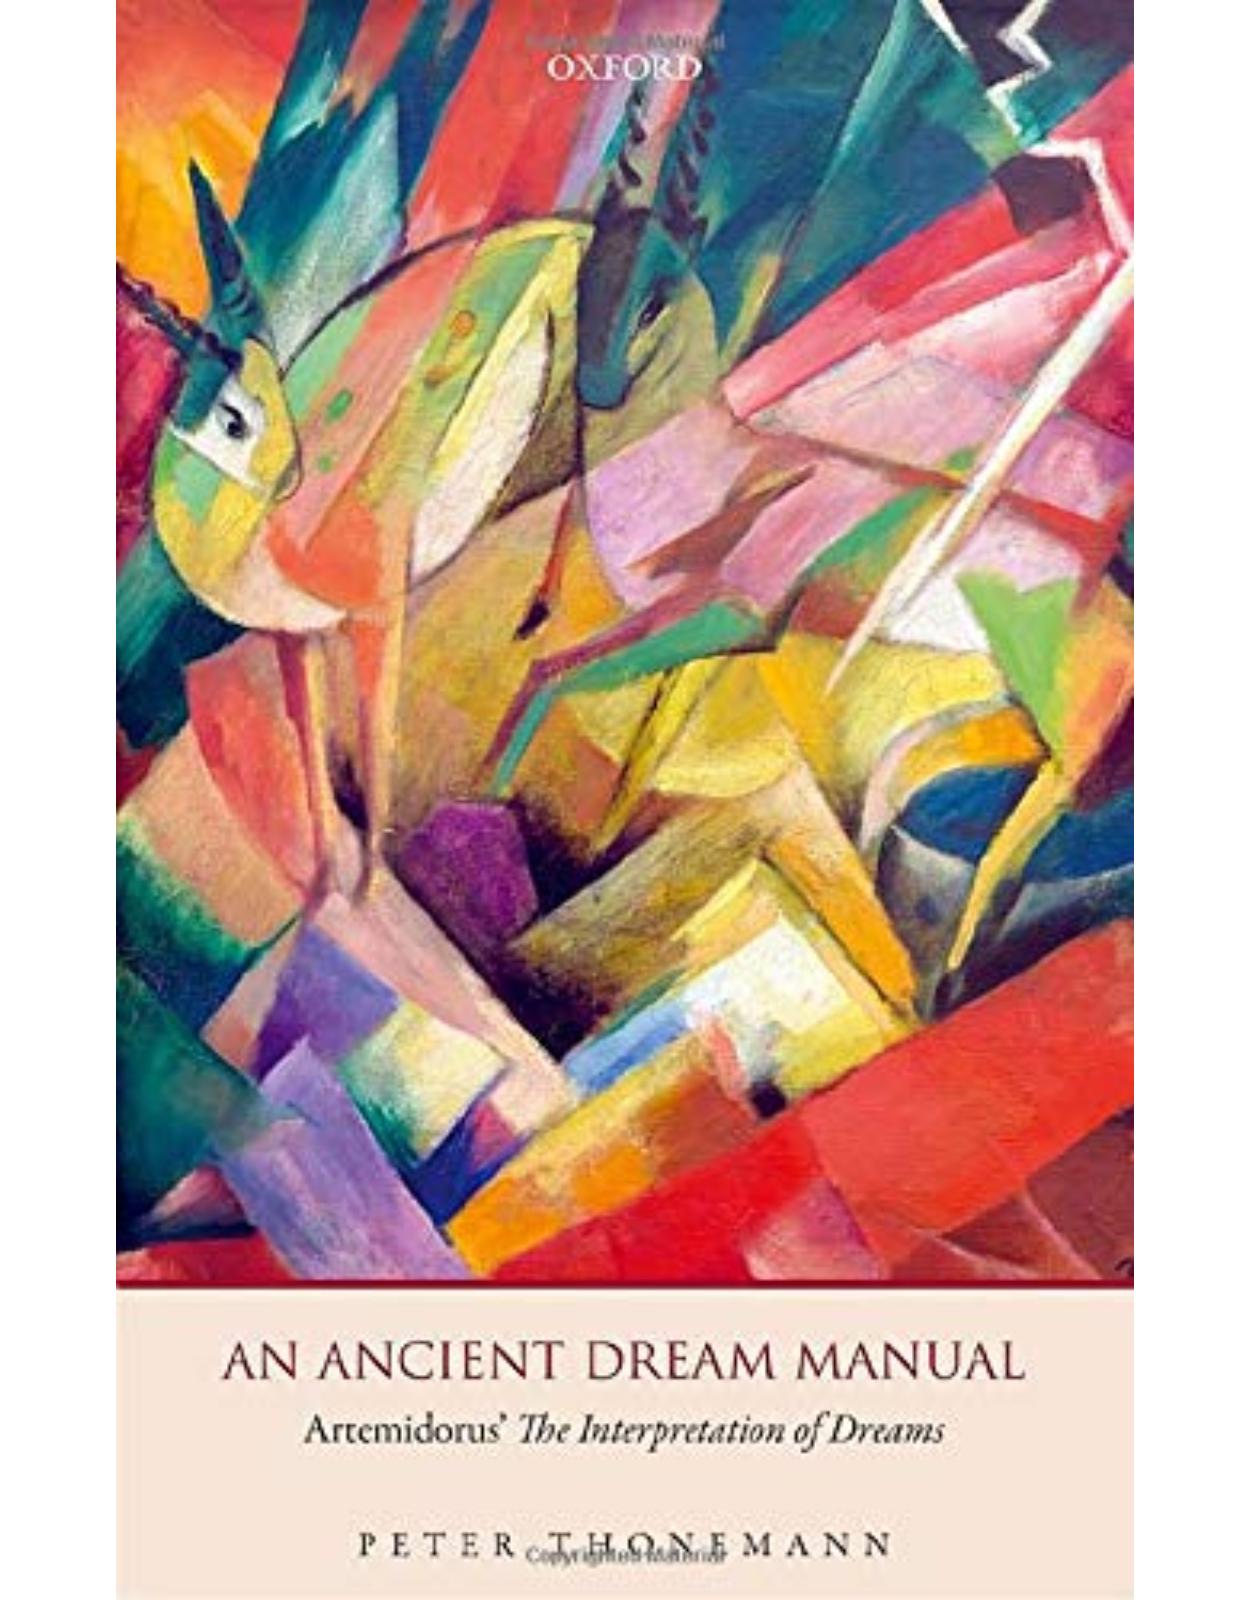 An Ancient Dream Manual